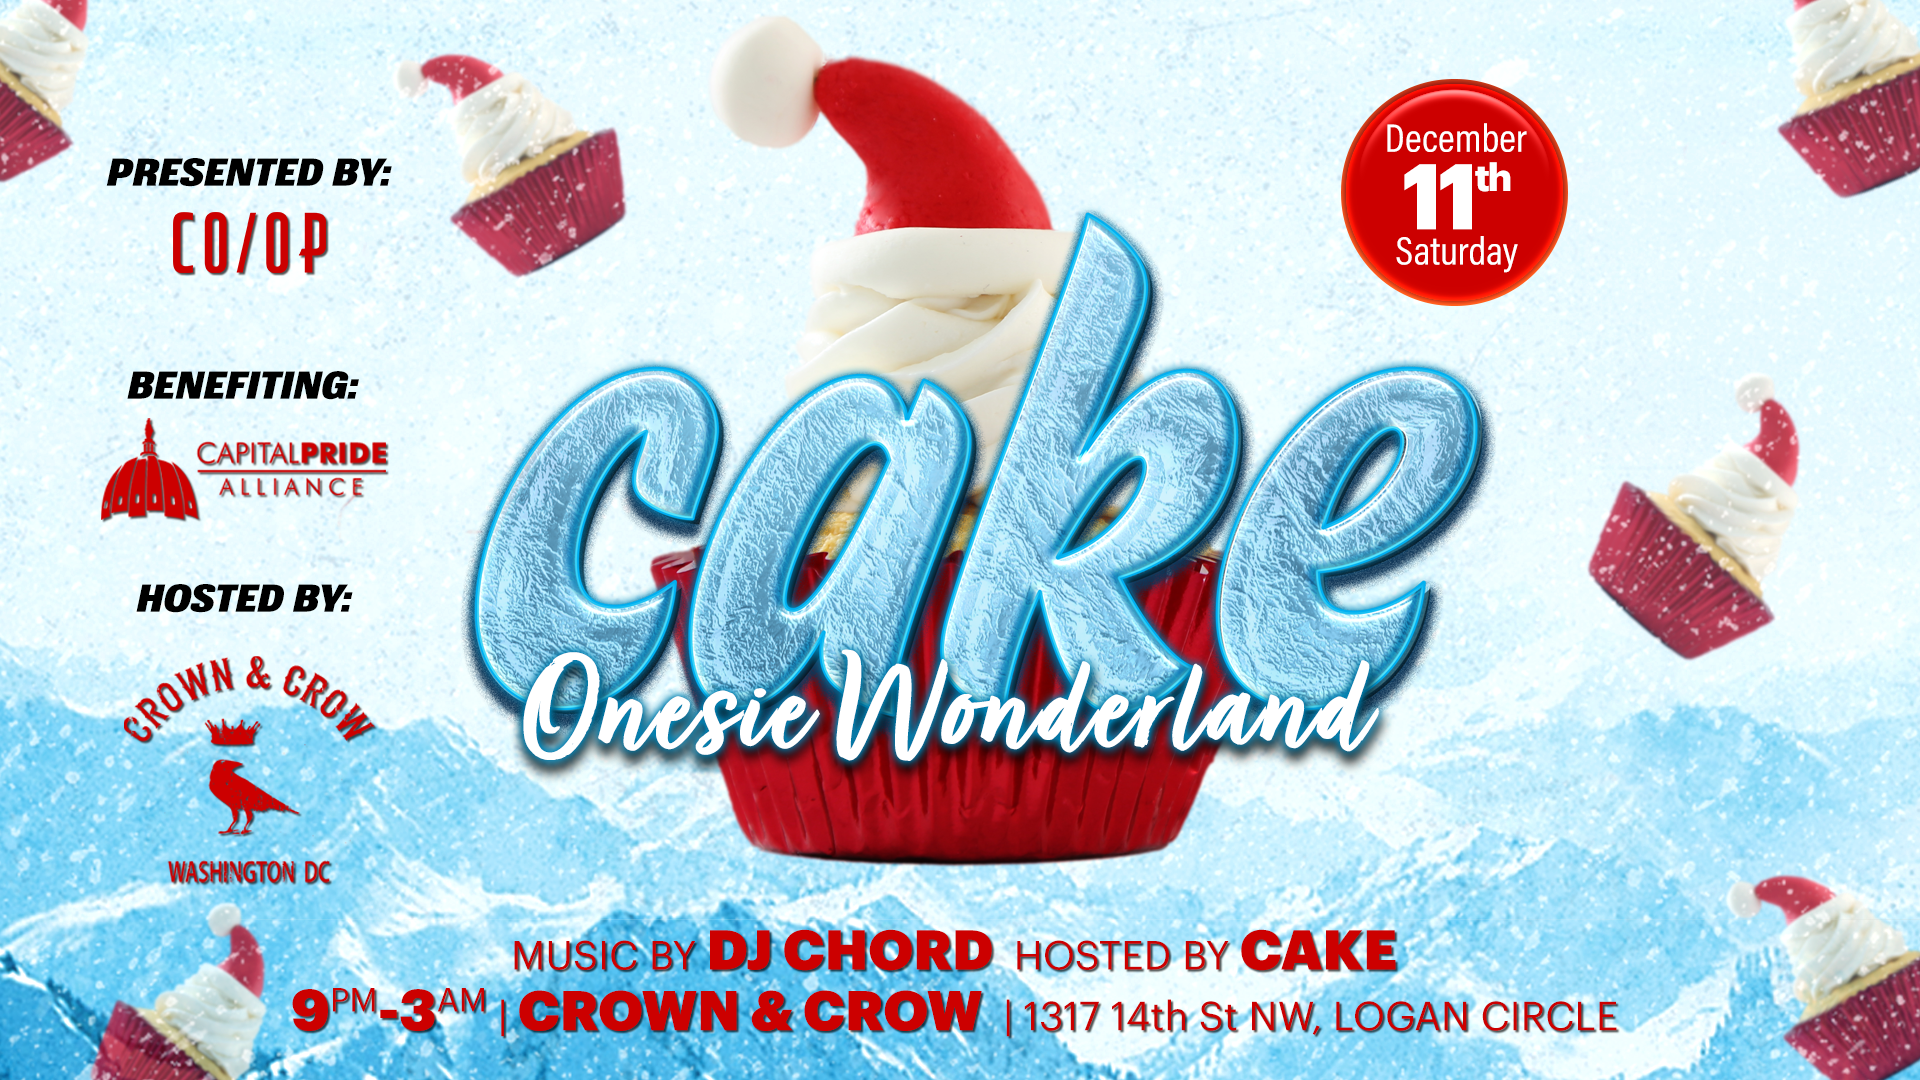 CAKE: Onesie Wonderland